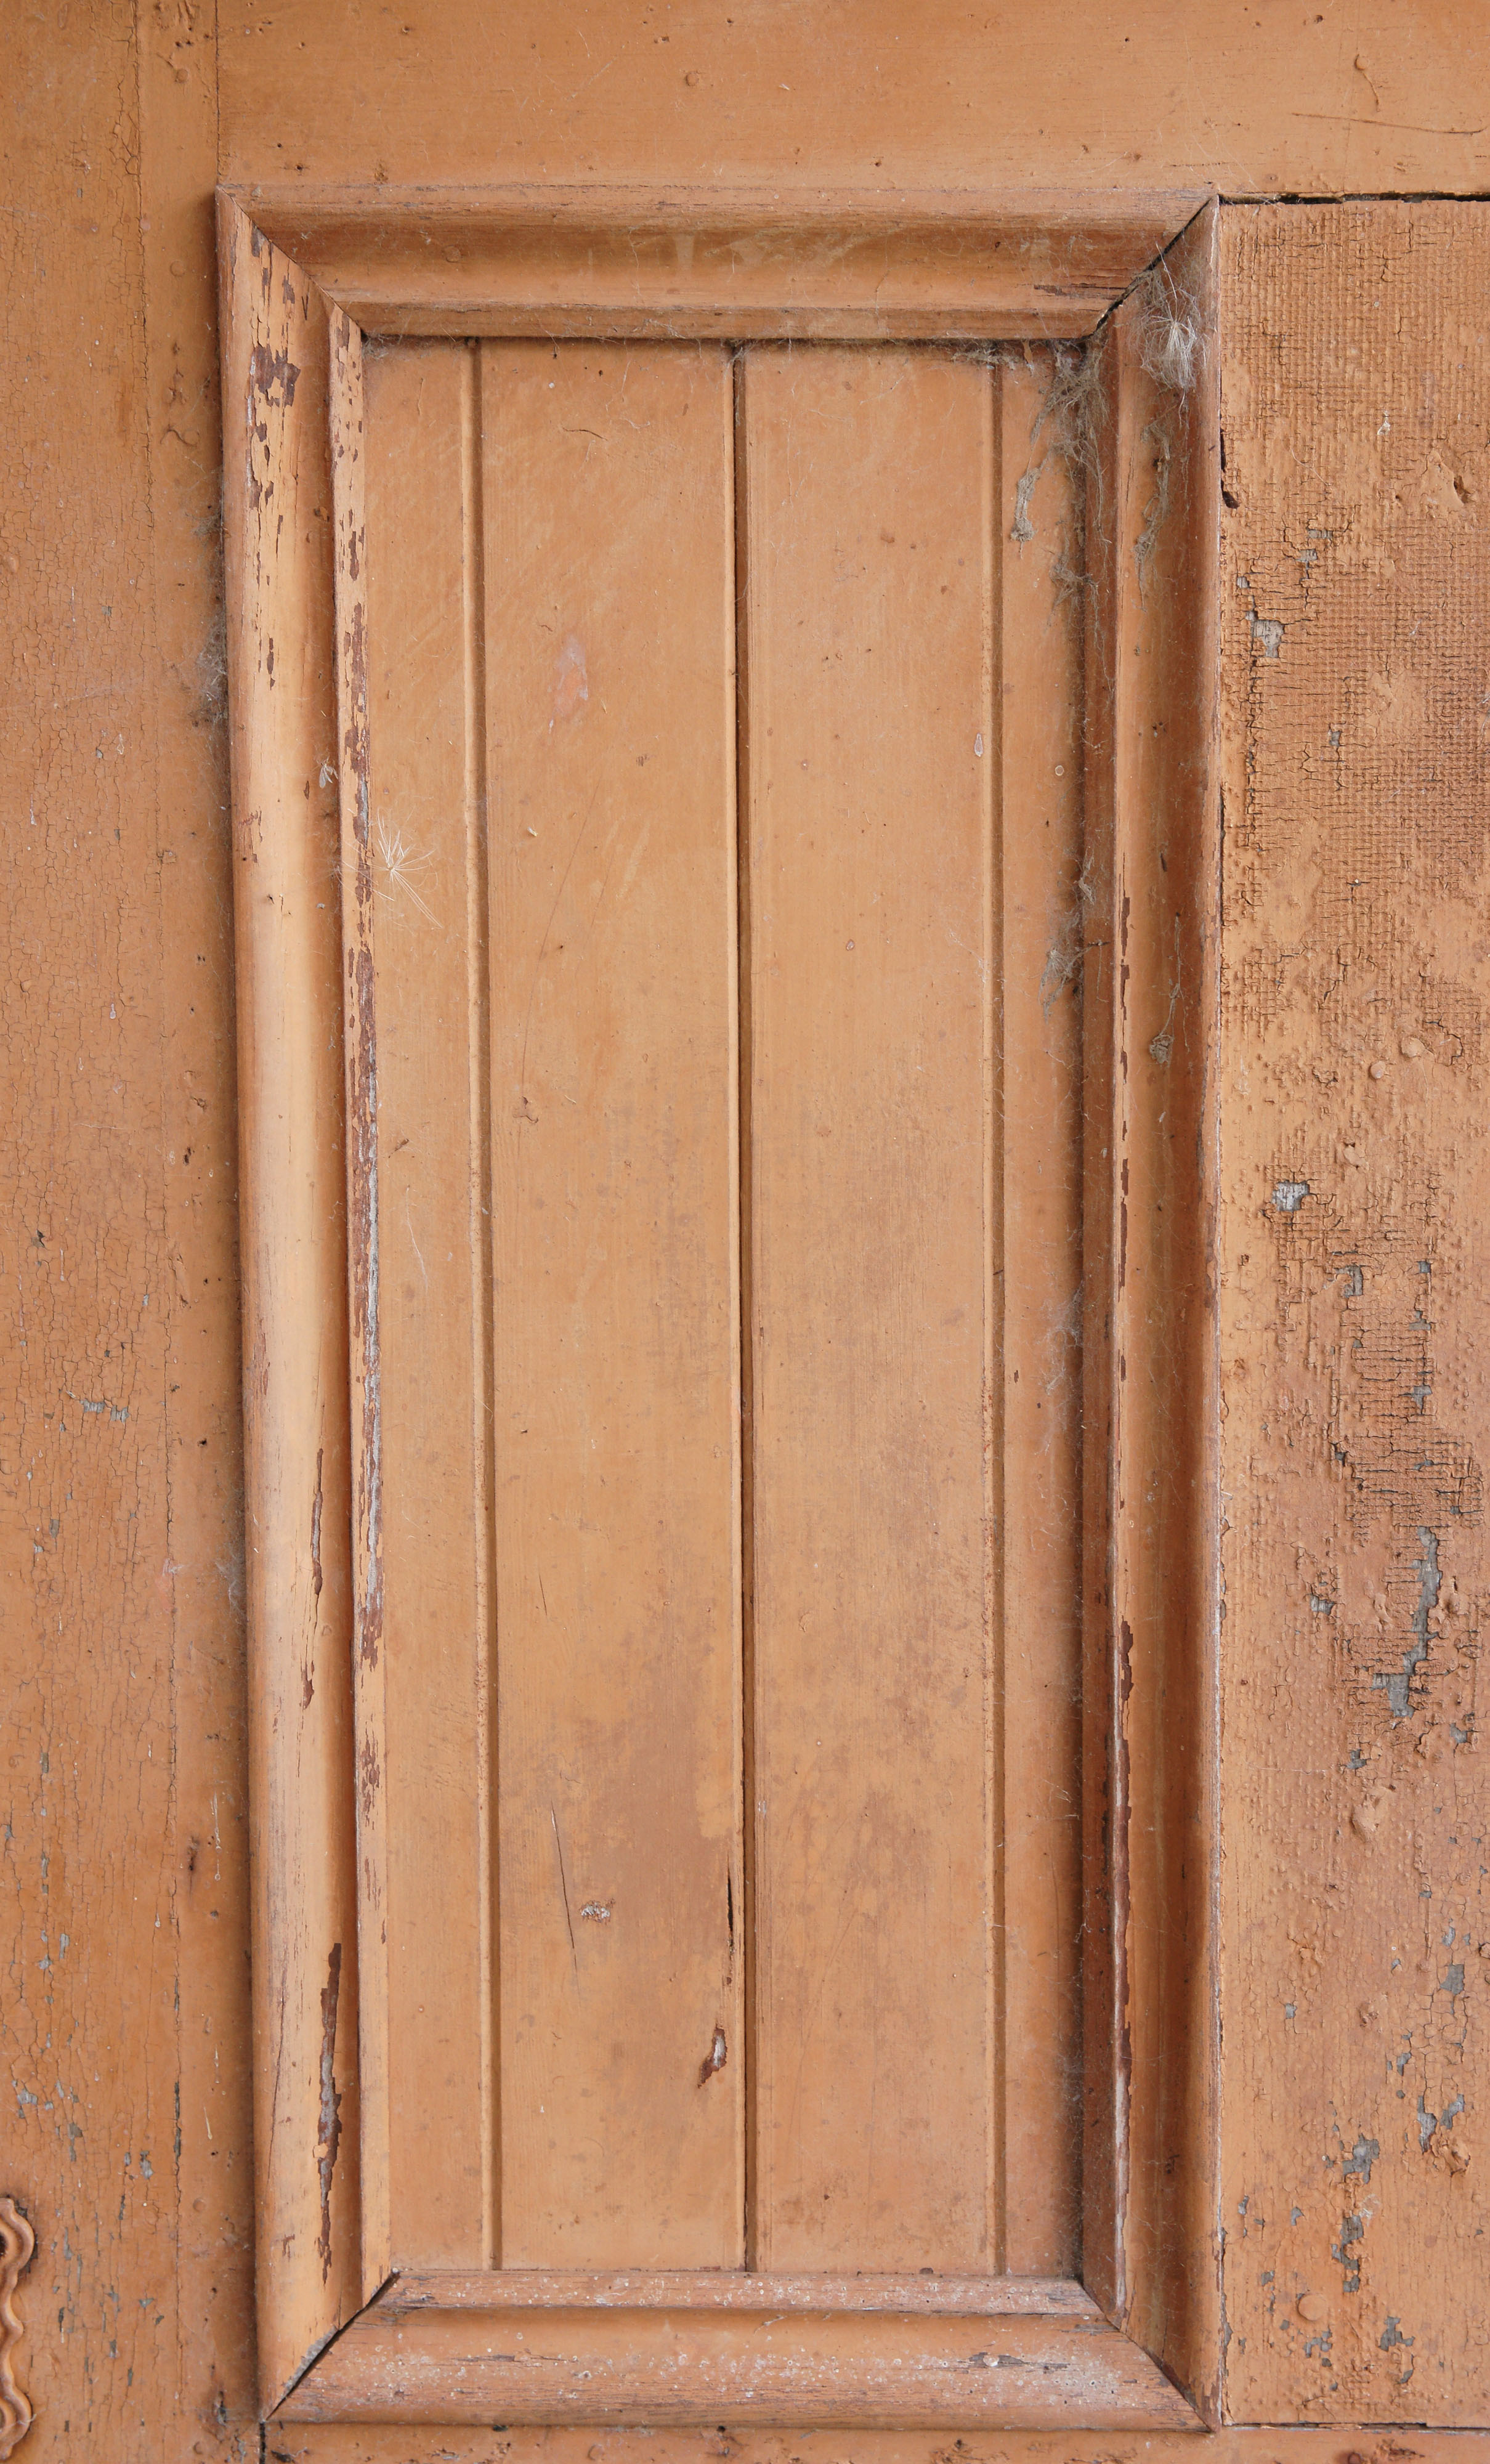 Khung gỗ trong cửa đóng một vai trò quan trọng trong việc định hình không gian sống của bạn. Với kiểu dáng đẹp và chất liệu tốt, khung gỗ là một phần quan trọng giúp tăng tính thẩm mỹ cho ngôi nhà của bạn. Hãy để hình ảnh của khung gỗ trong cửa này truyền tải sự ấm cúng và trang nhã cho ngôi nhà của bạn.